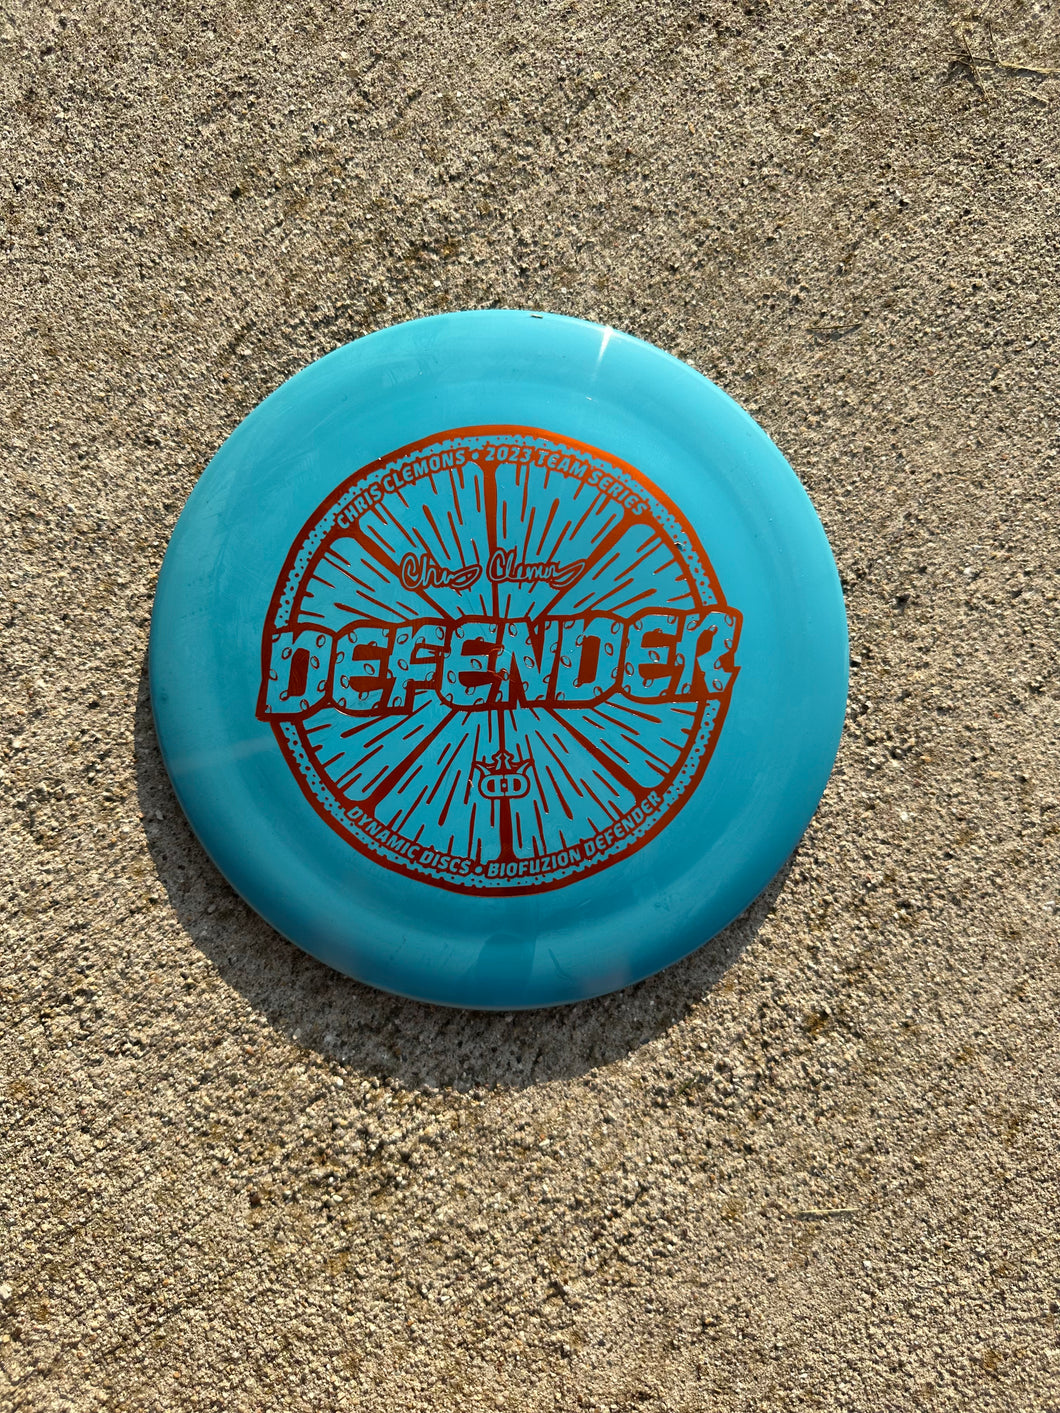 Dynamic Discs Defender blue 170g